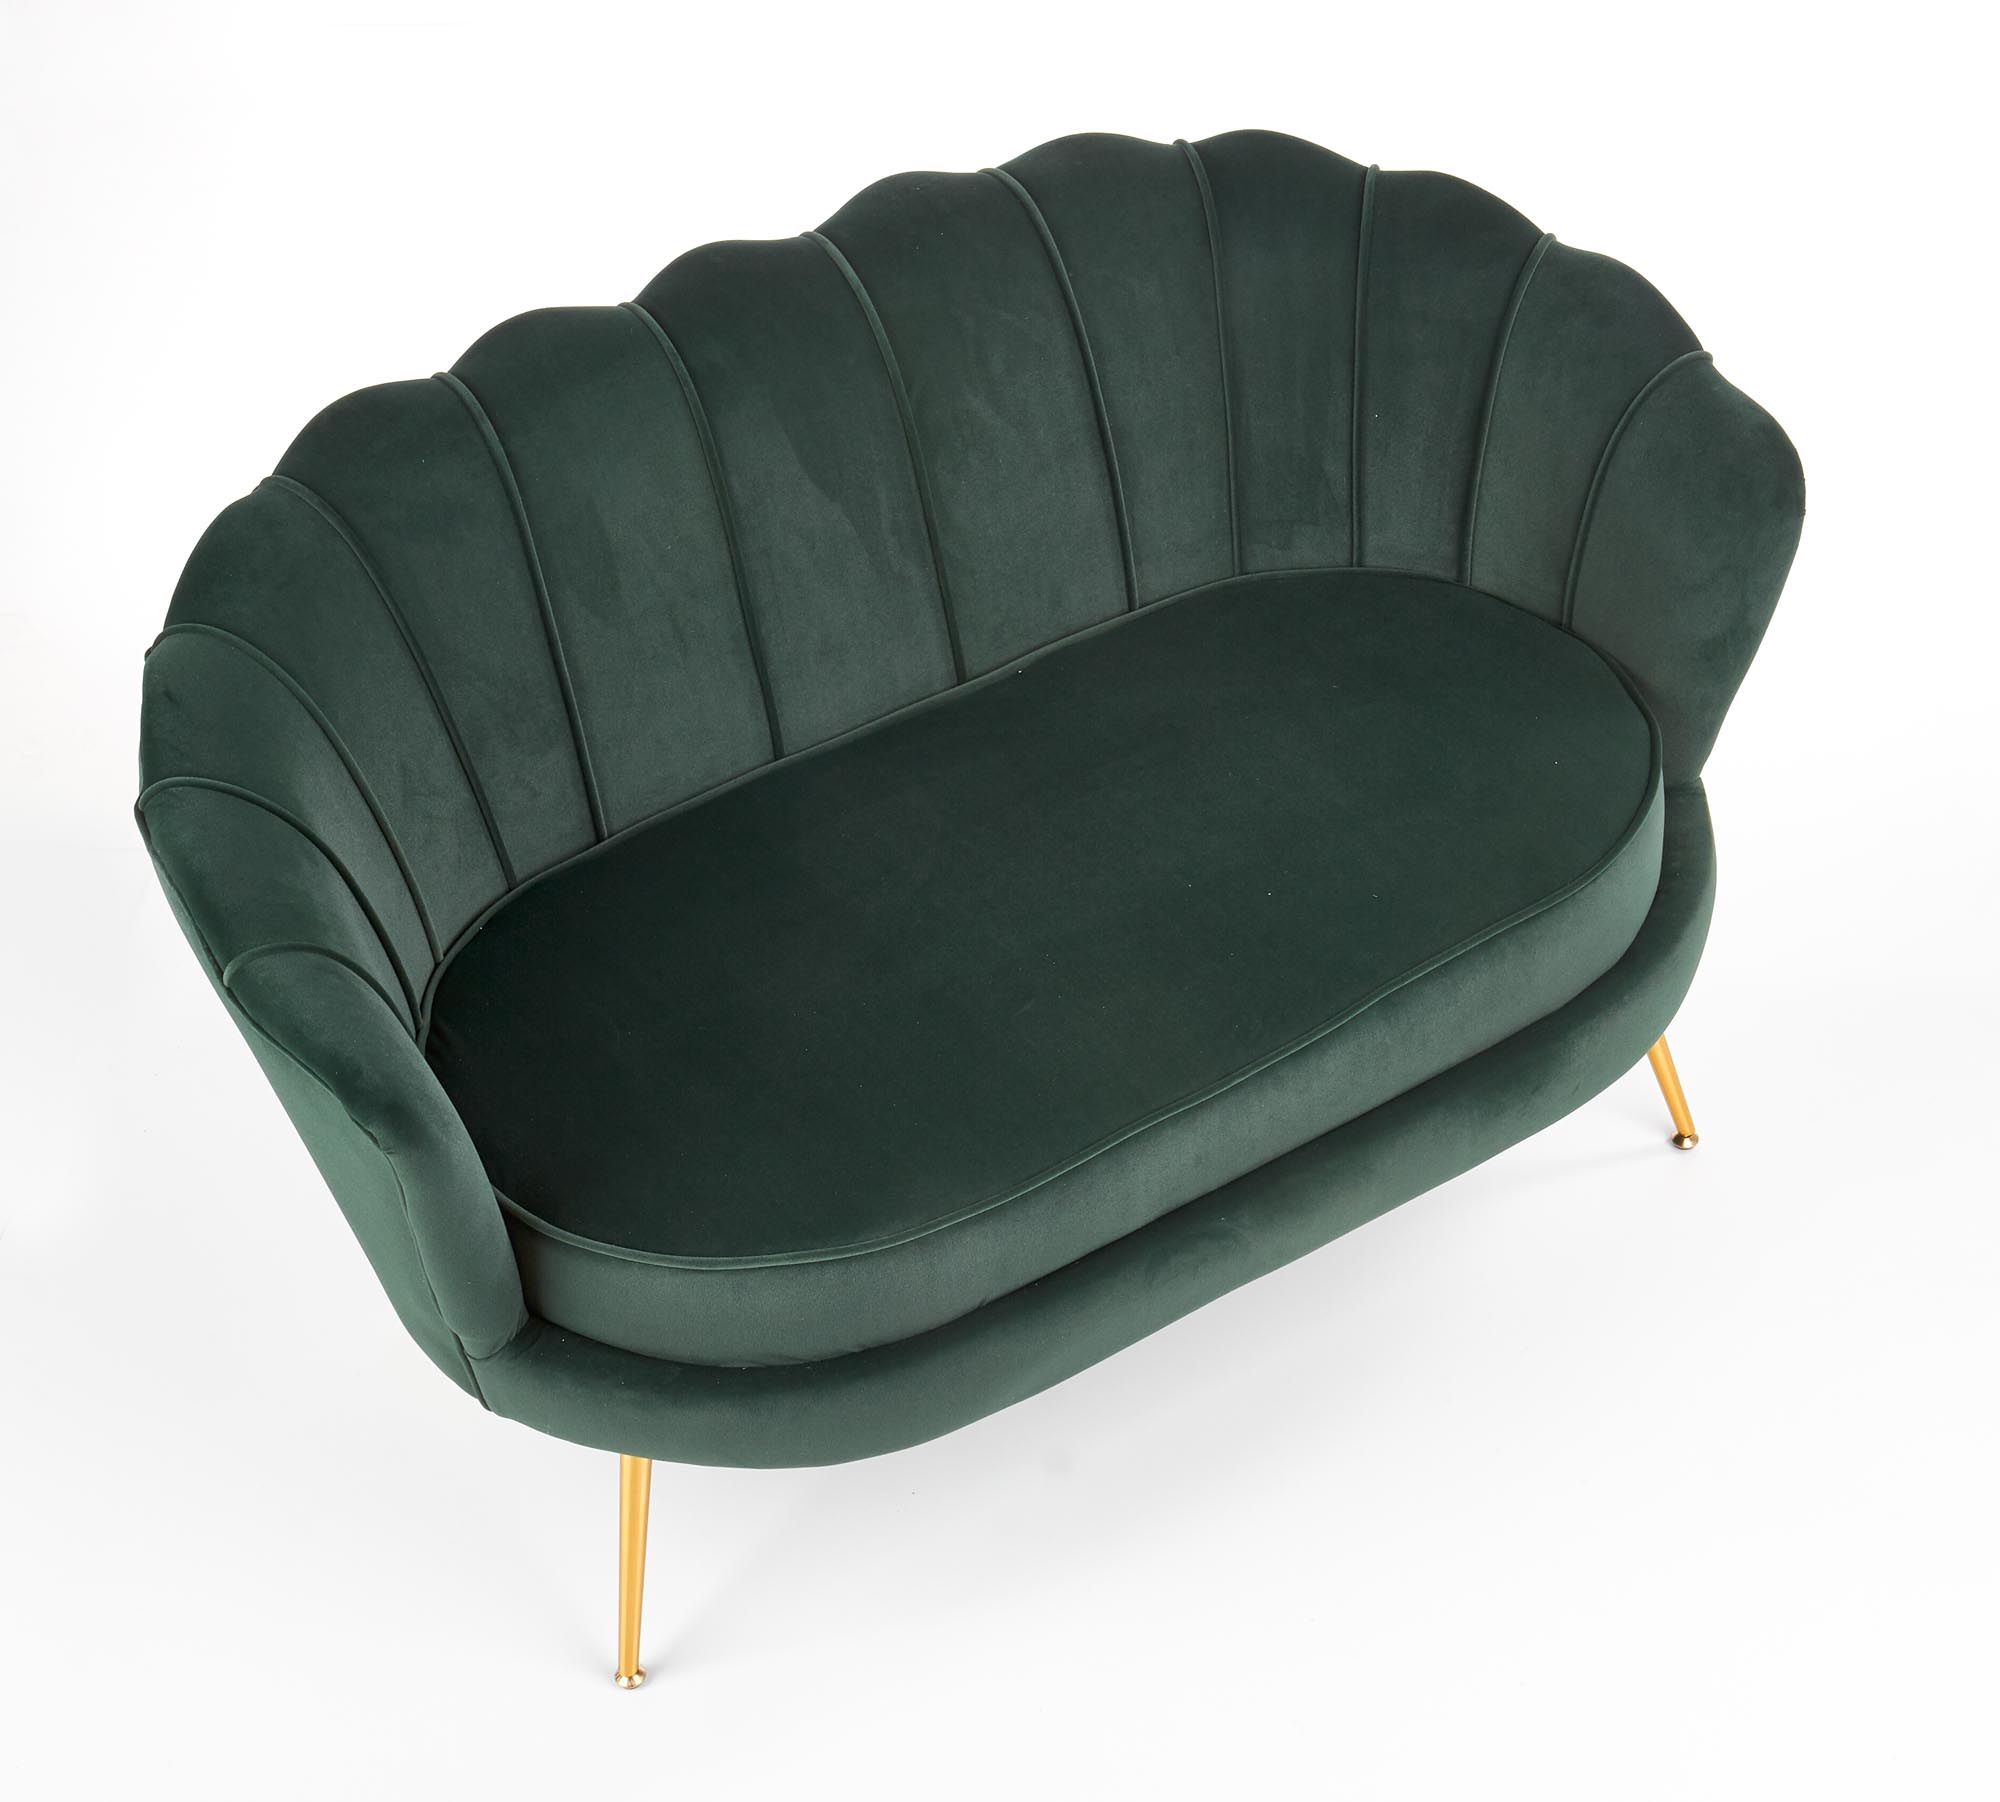 AMORINITO XL fotel wypoczynkowy ciemny zielony / złoty amorinito xl fotel wypoczynkowy ciemny zielony / złoty